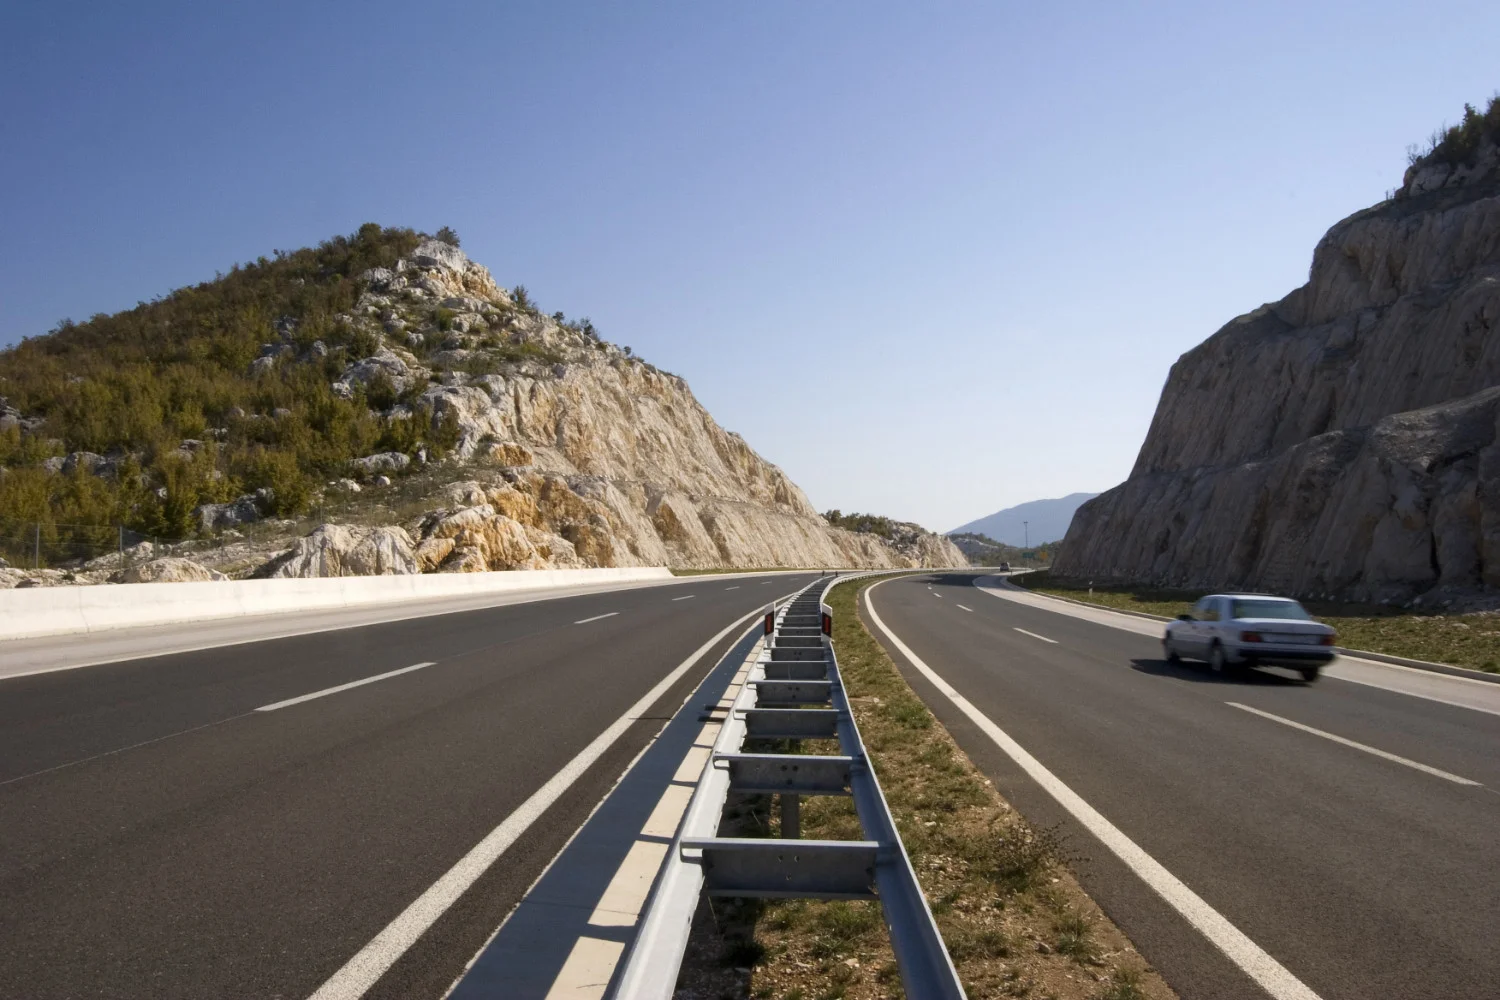 Chorwackie autostrady są znane z wysokich limitów prędkości. Ograniczenie prędkości na autostradzie w Chorwacji wynosi 130 km/h.